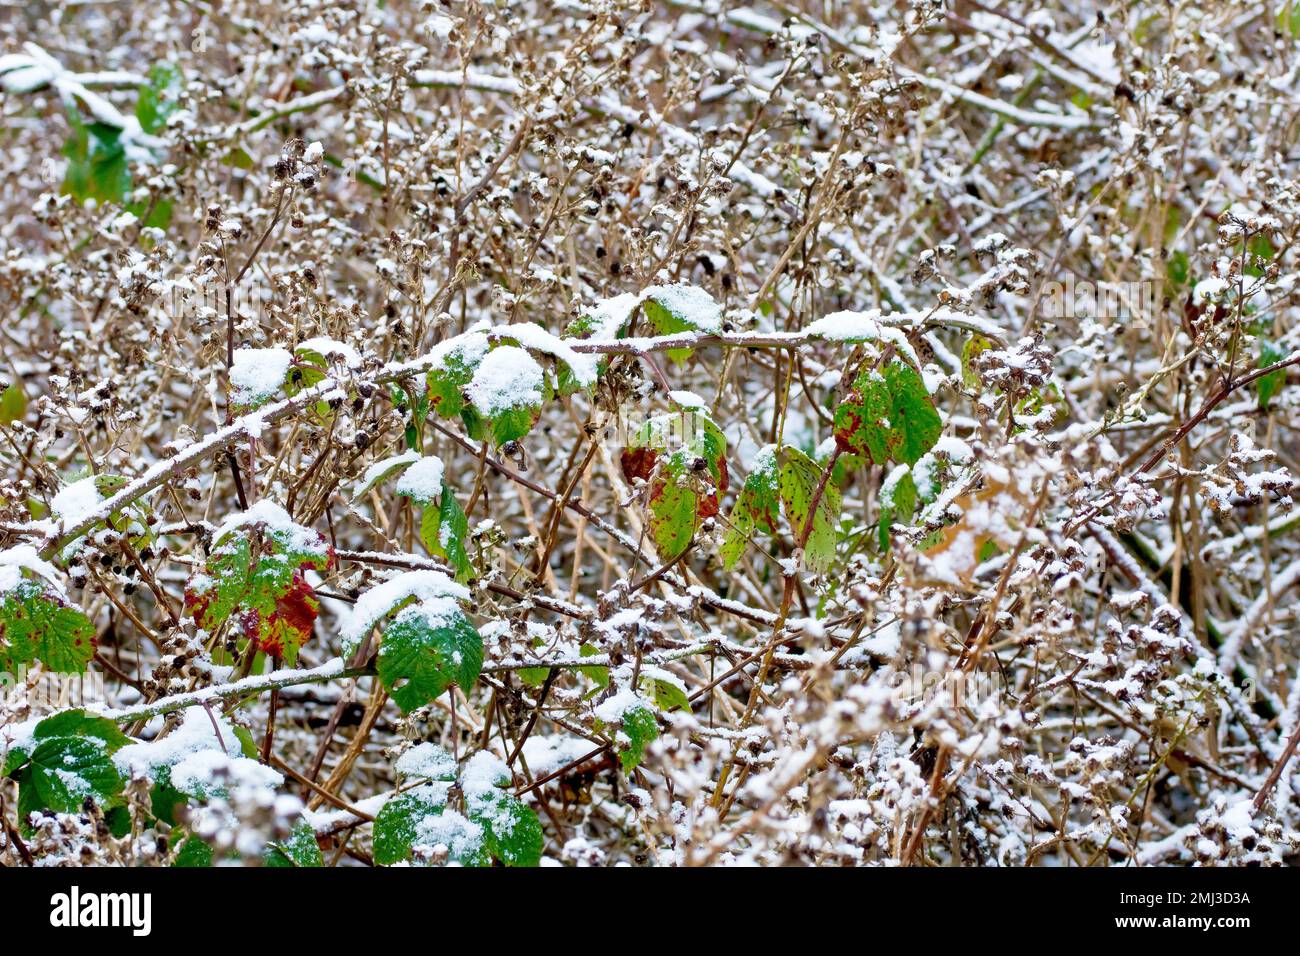 Mora o Bramble (rubus frutticosus), primo piano che mostra un groviglio di lunghi steli dell'arbusto con foglie, ricoperti da una leggera spolveratura di neve. Foto Stock